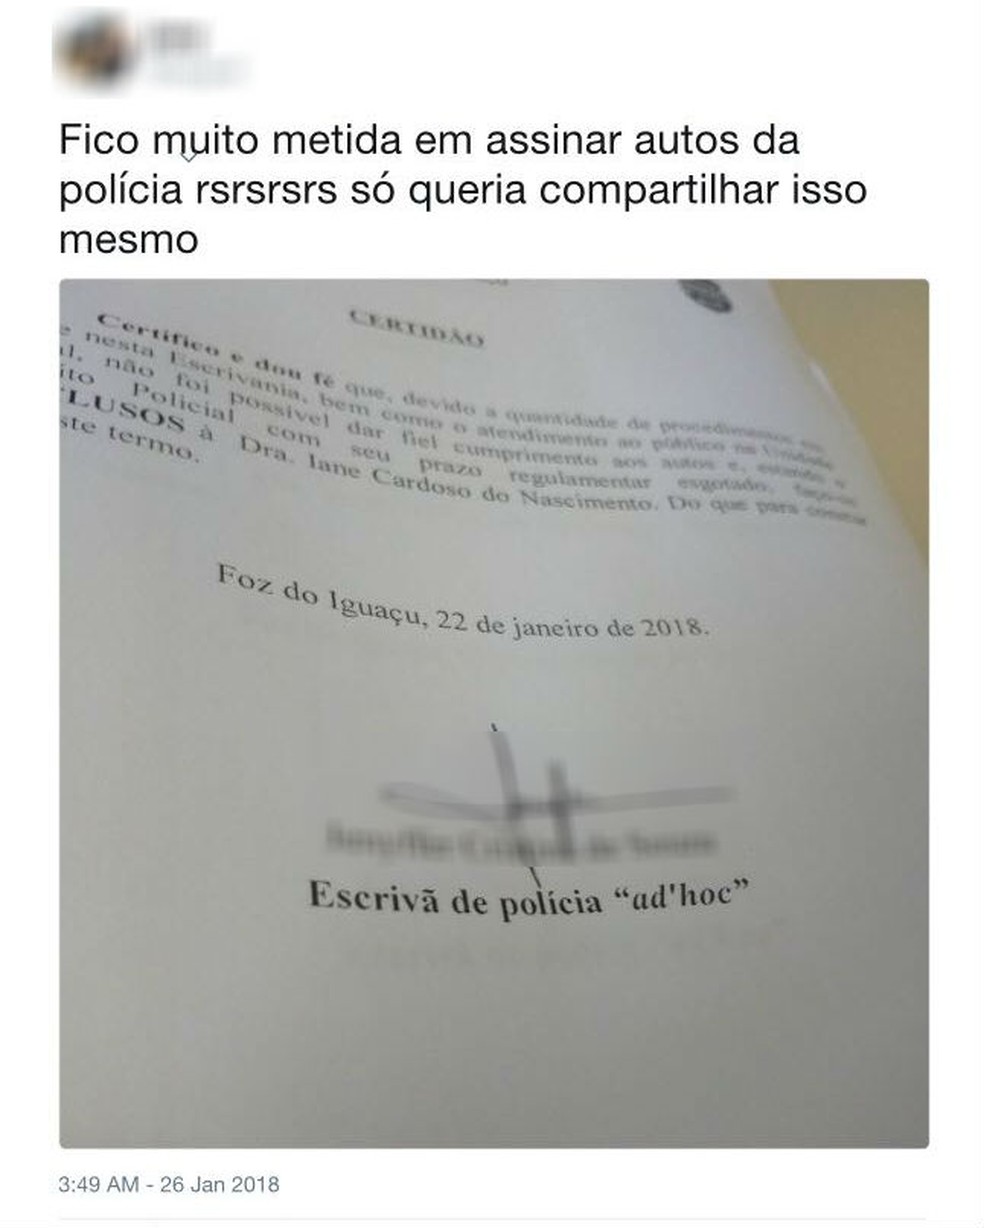 Na mesma rede social, a ex-estagiária exibia documentos aparentemente oficiais, assinados por ela como escrivã de polícia (Foto: Reprodução/Twitter)